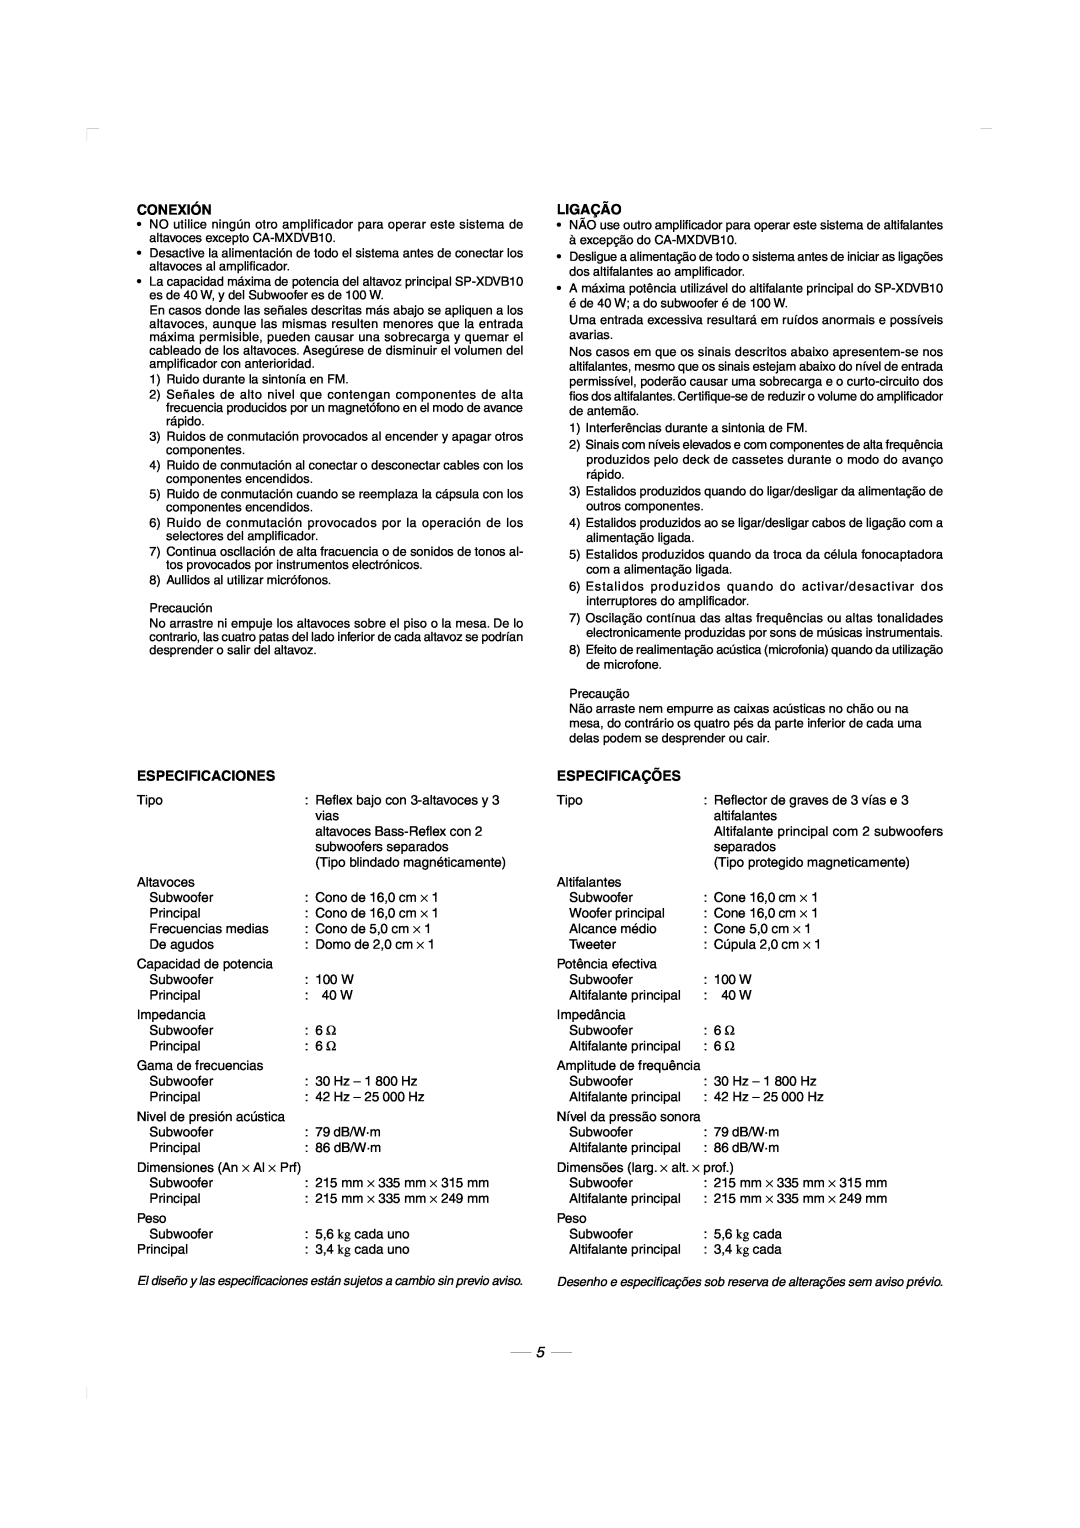 JVC CA-MXDVB10, CA-MXDVA9 manual Conexión, Ligação, Especificaciones, Especificações 